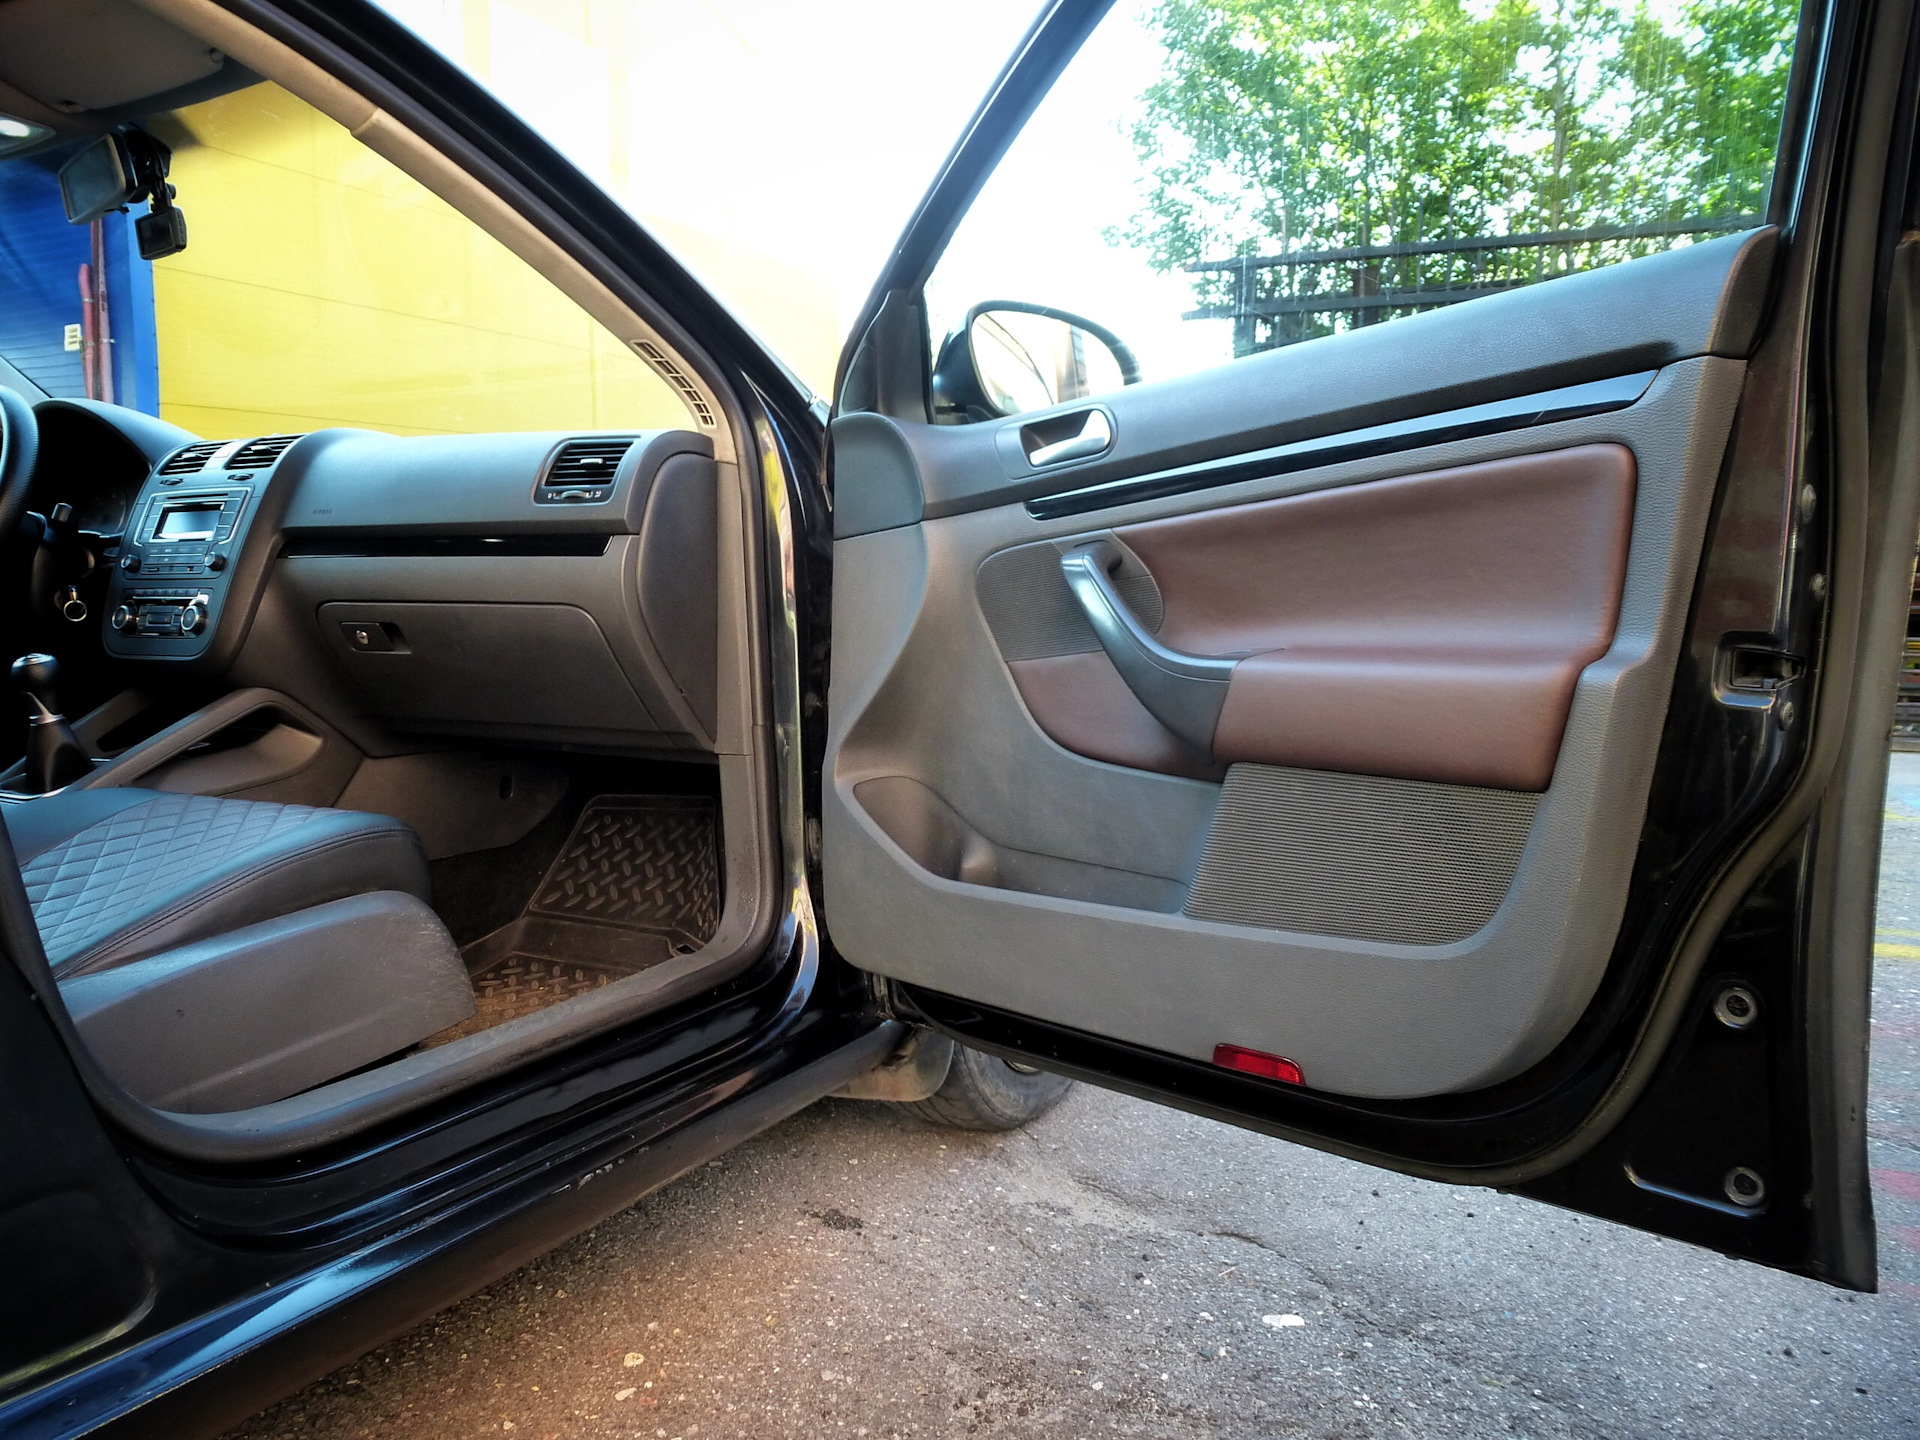 Дверные карты джетта. Перетяжка дверей Фольксваген Джетта 6. Volkswagen Jetta 2014 перетяжка дверных кар. Перетяжка дверных карт Фольксваген Джетта 6. Дверные карты Фольксваген Джетта.